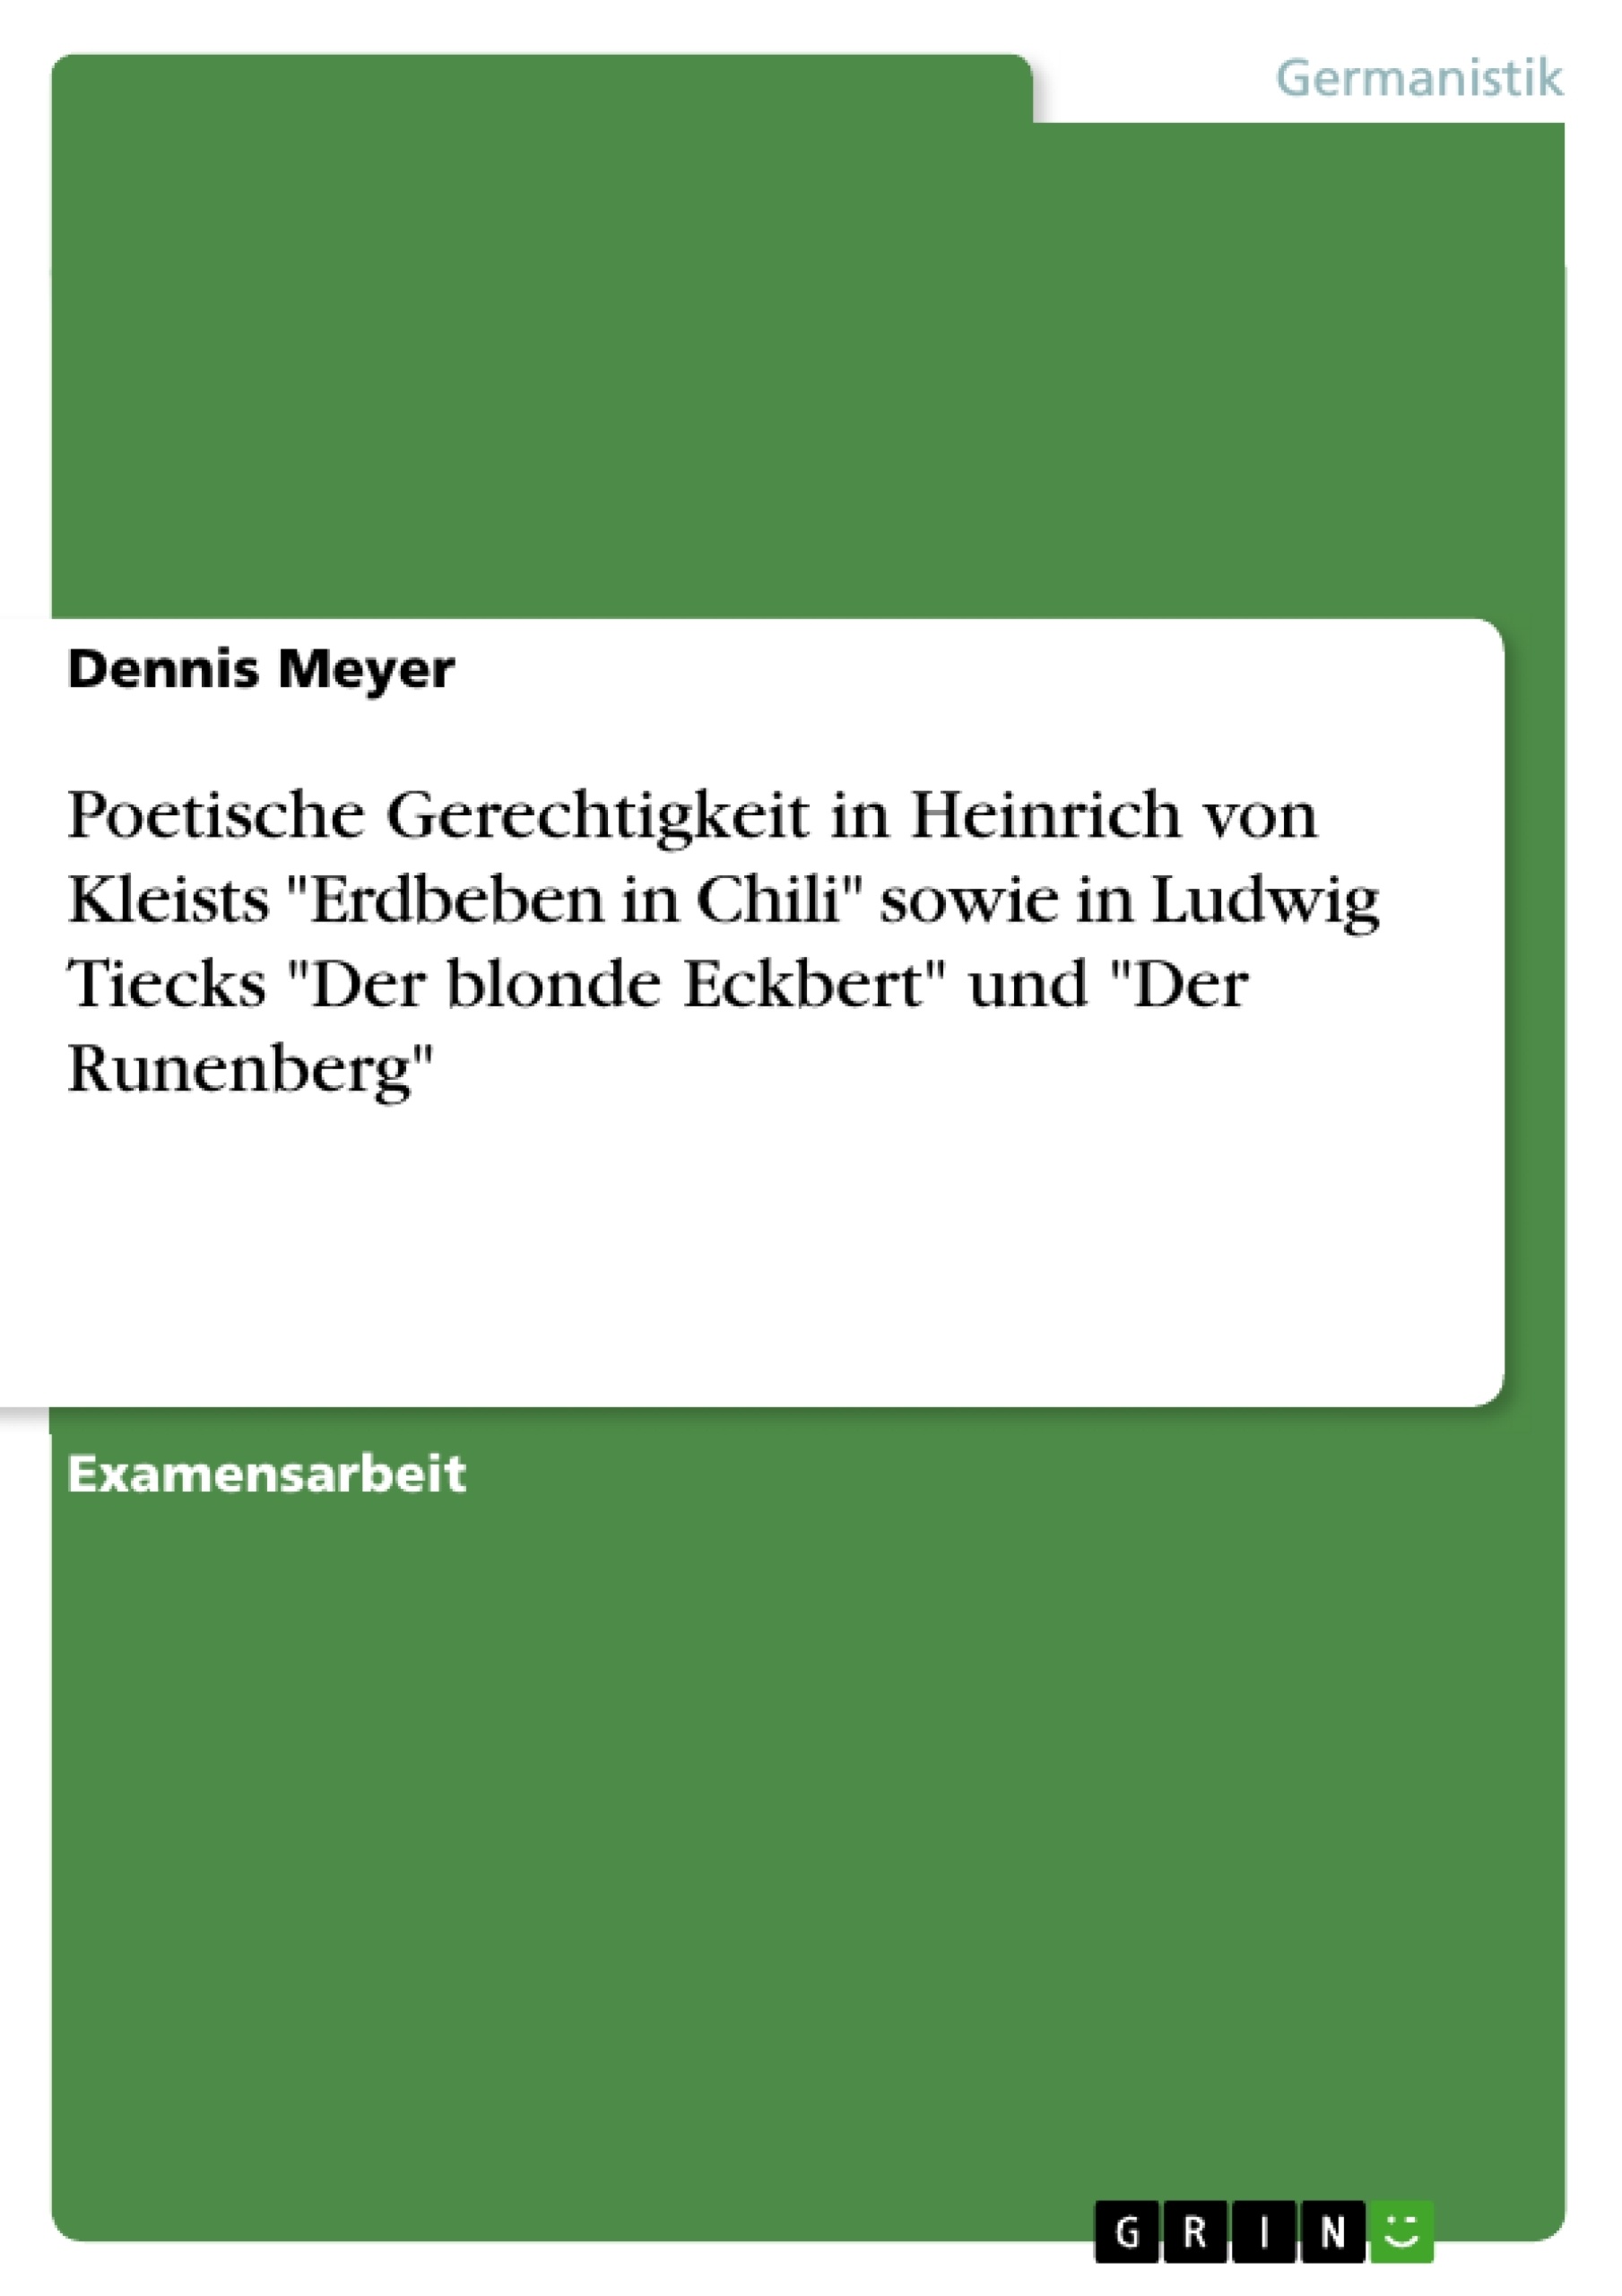 Title: Poetische Gerechtigkeit in Heinrich von Kleists "Erdbeben in Chili" sowie in Ludwig Tiecks "Der blonde Eckbert" und "Der Runenberg"